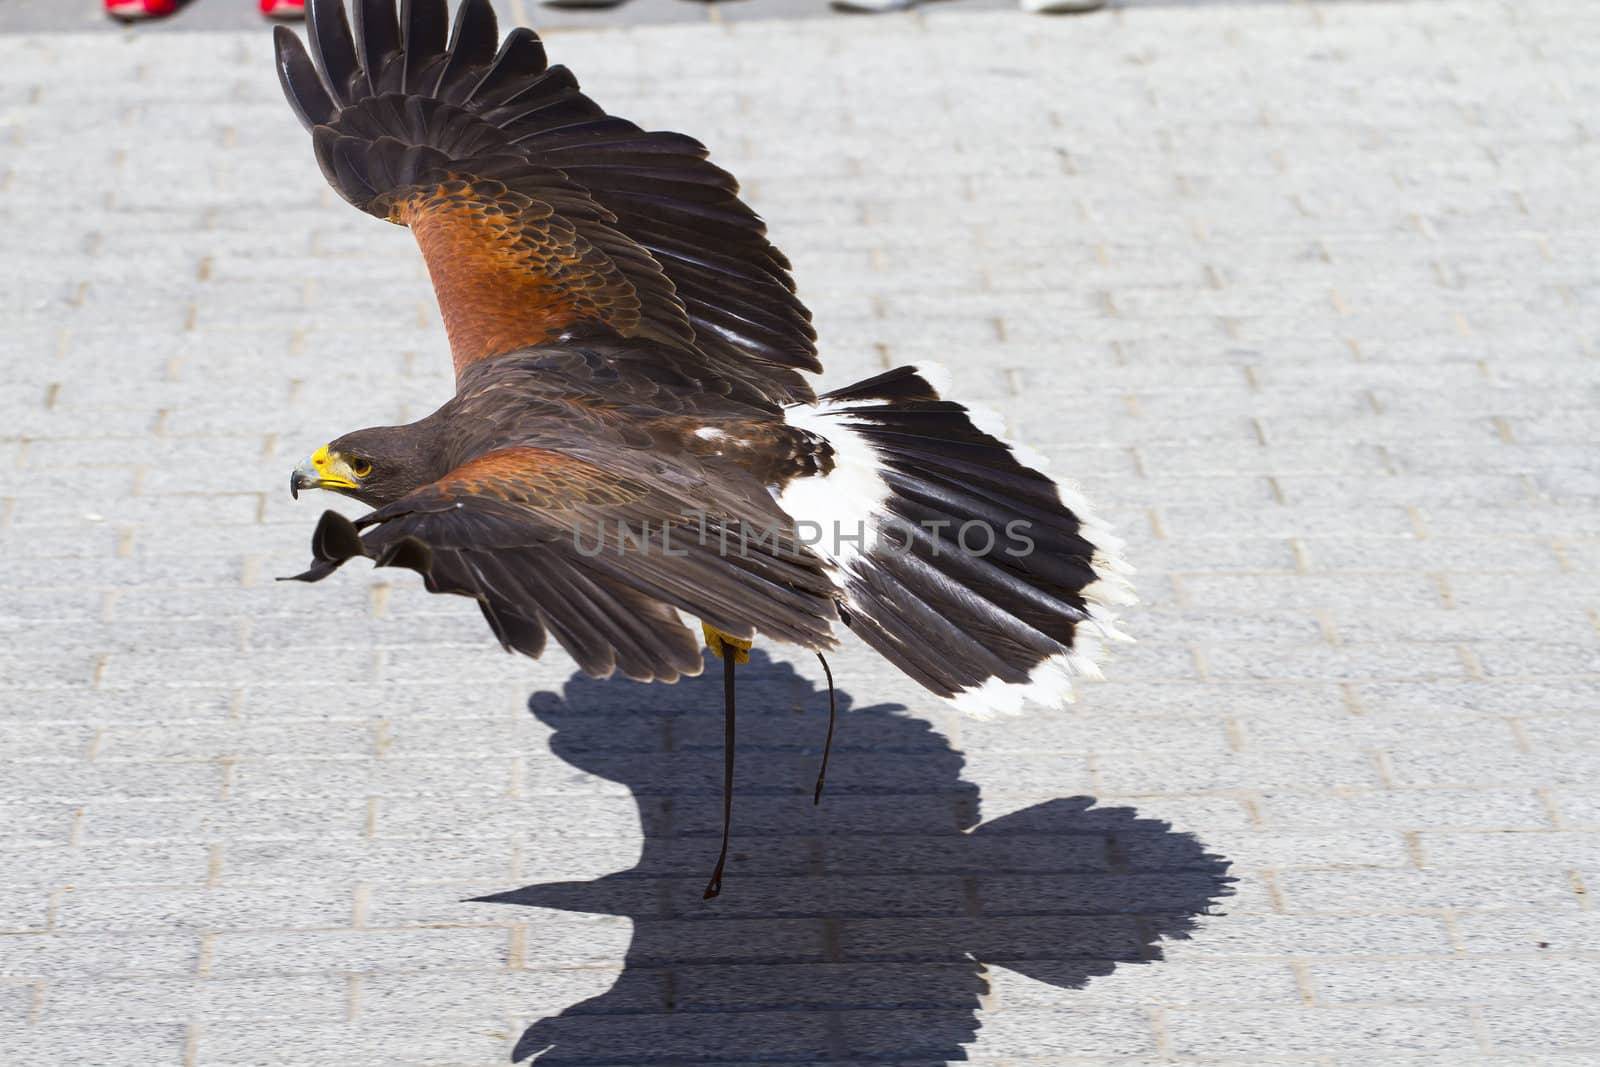 low-flying eagle by FernandoCortes